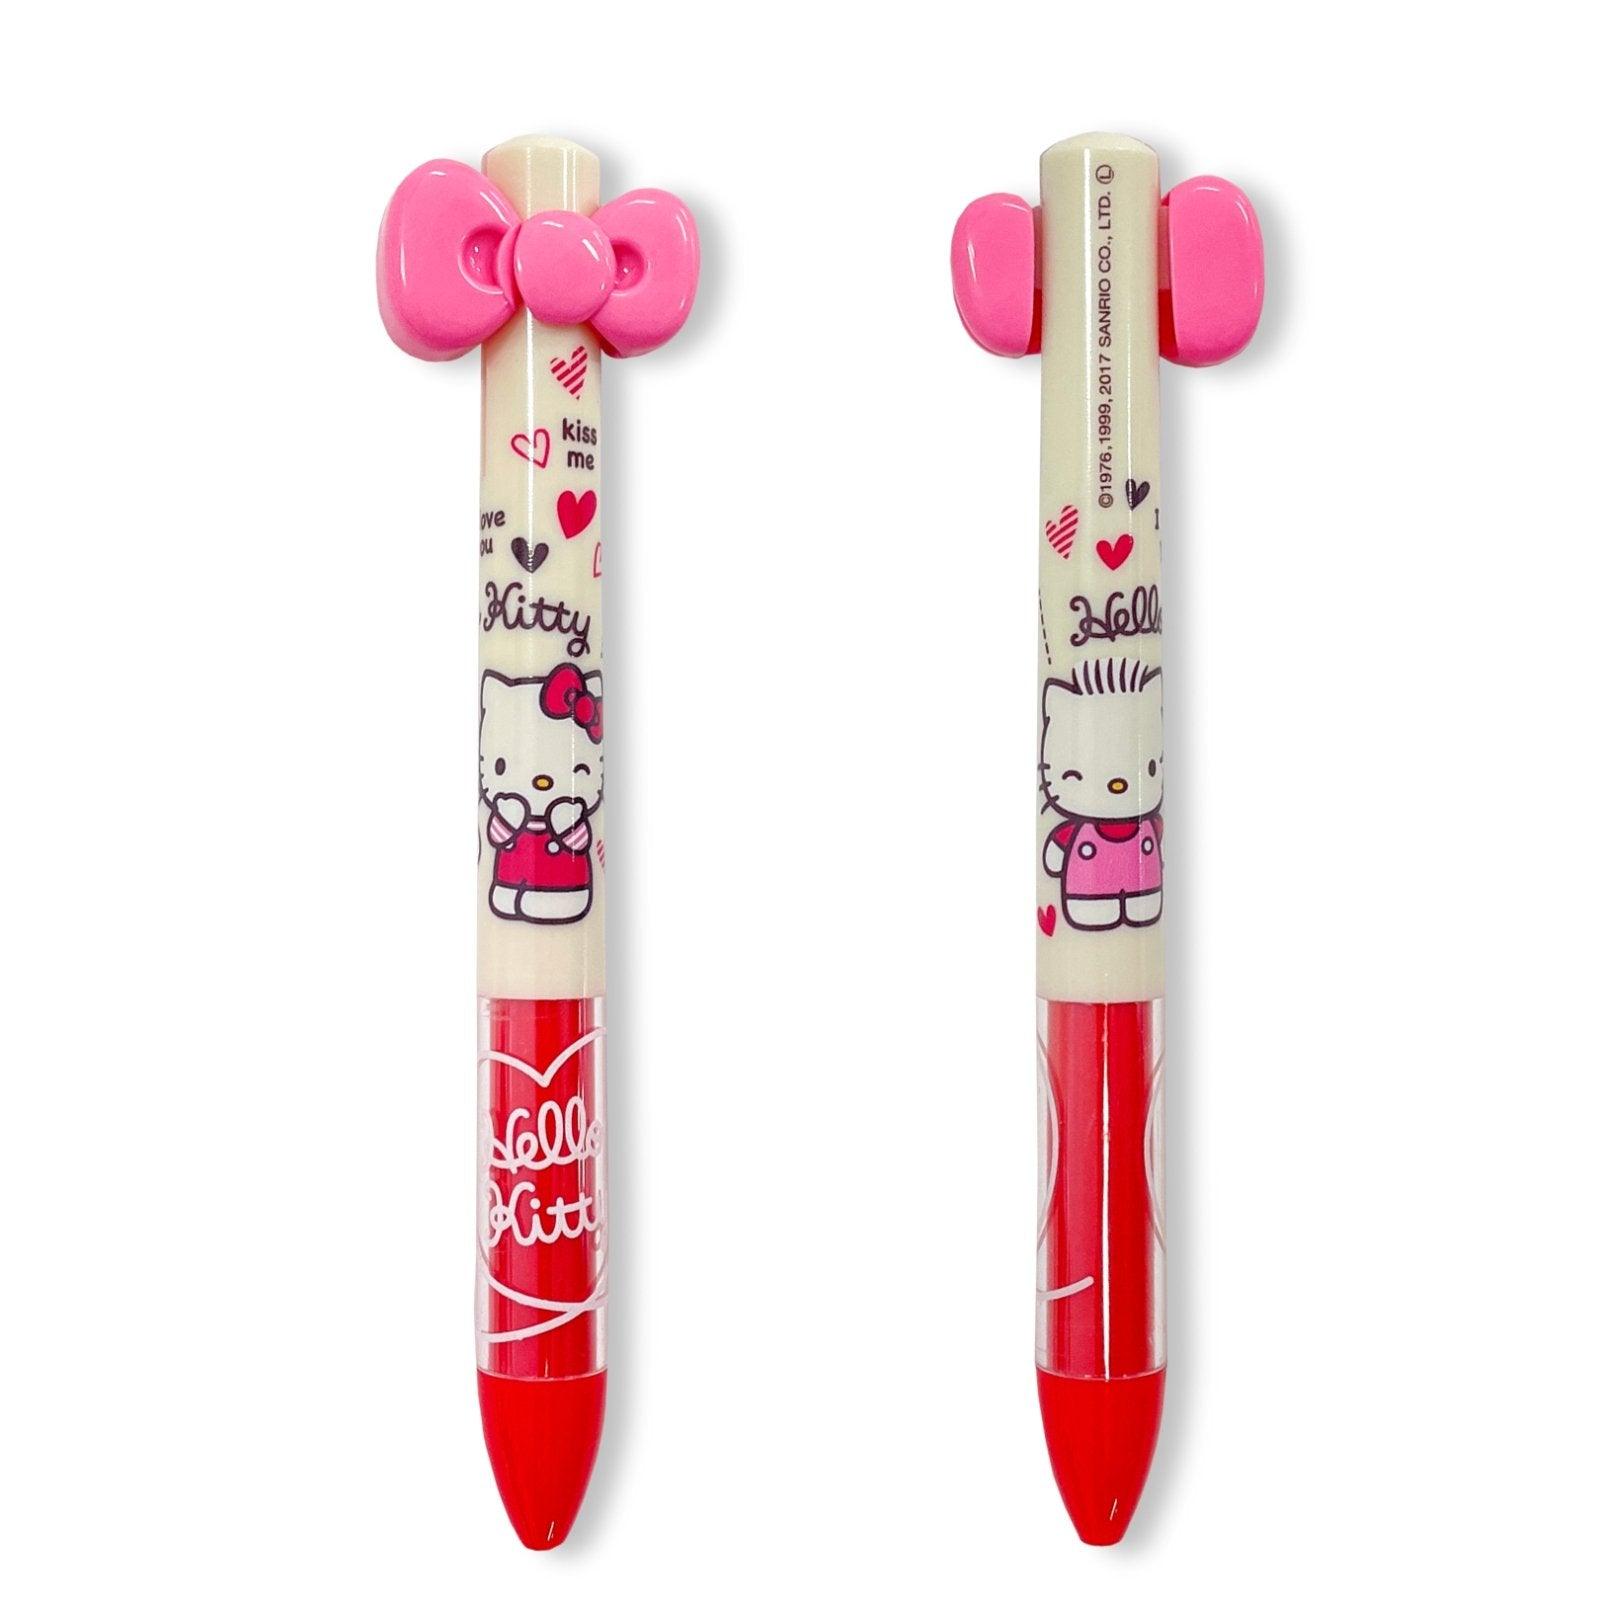 ASUNARO x SANRIO Hello Kitty Red + Black Bicolor Pen Oil Pen Ball Pen Sakura